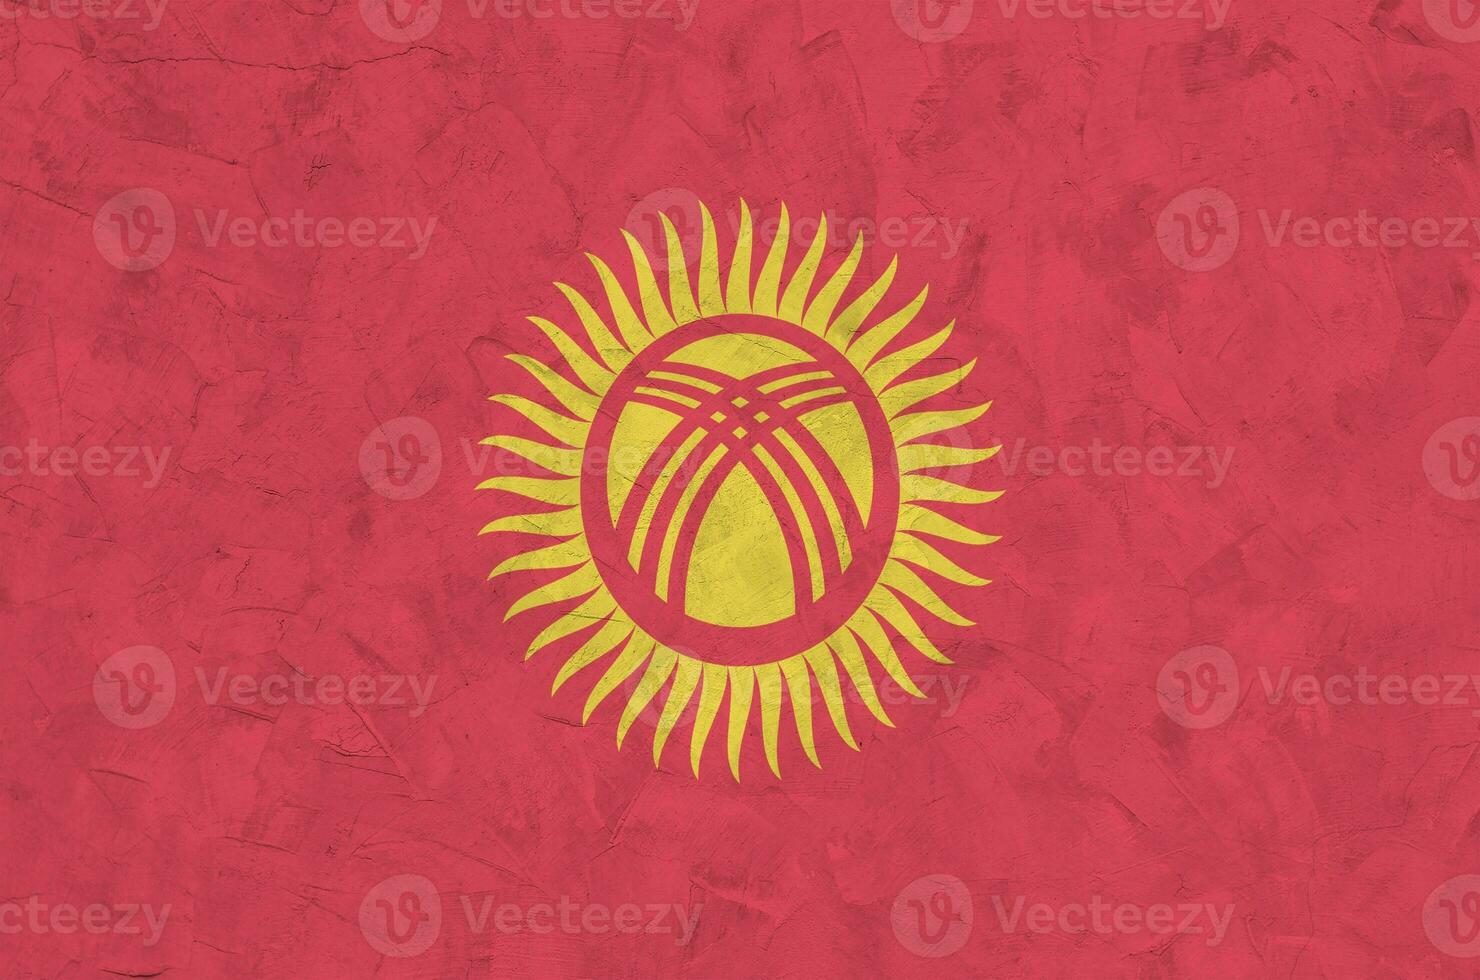 drapeau du kirghizistan représenté dans des couleurs de peinture vives sur un vieux mur de plâtrage en relief. bannière texturée sur fond rugueux photo